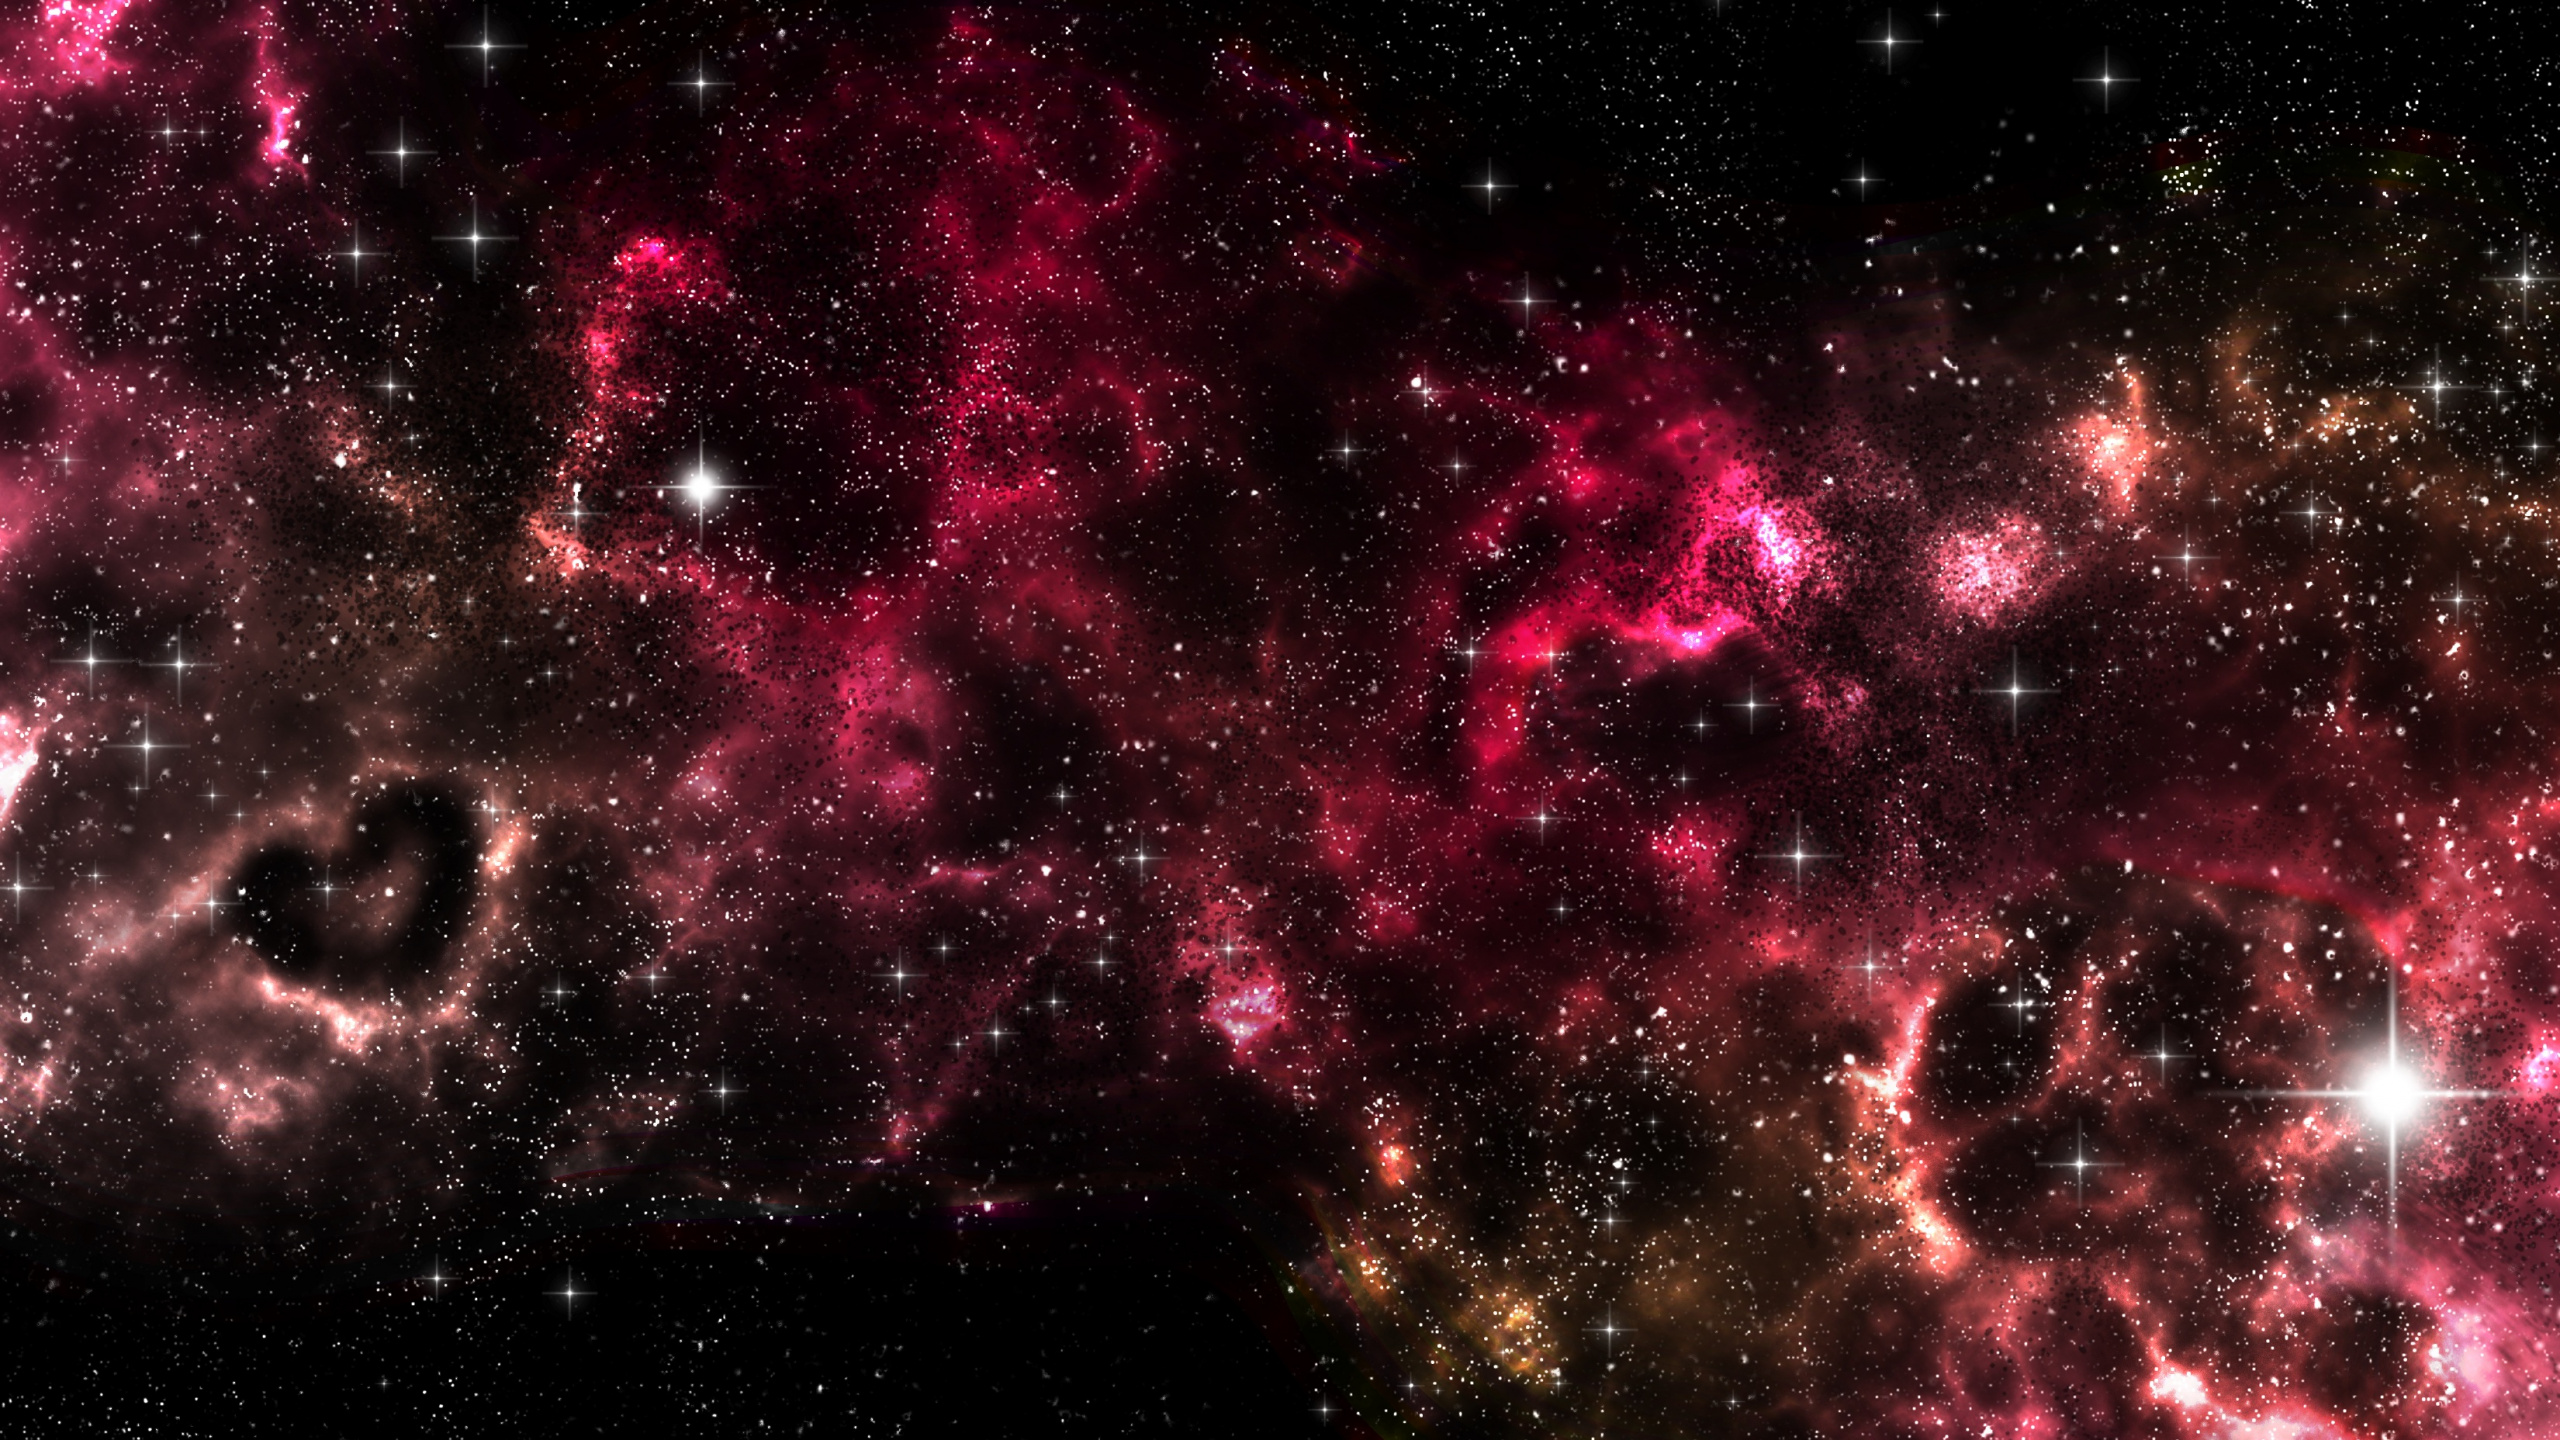 天文学, 外层空间, 天文学对象, 粉红色, 宇宙 壁纸 2560x1440 允许